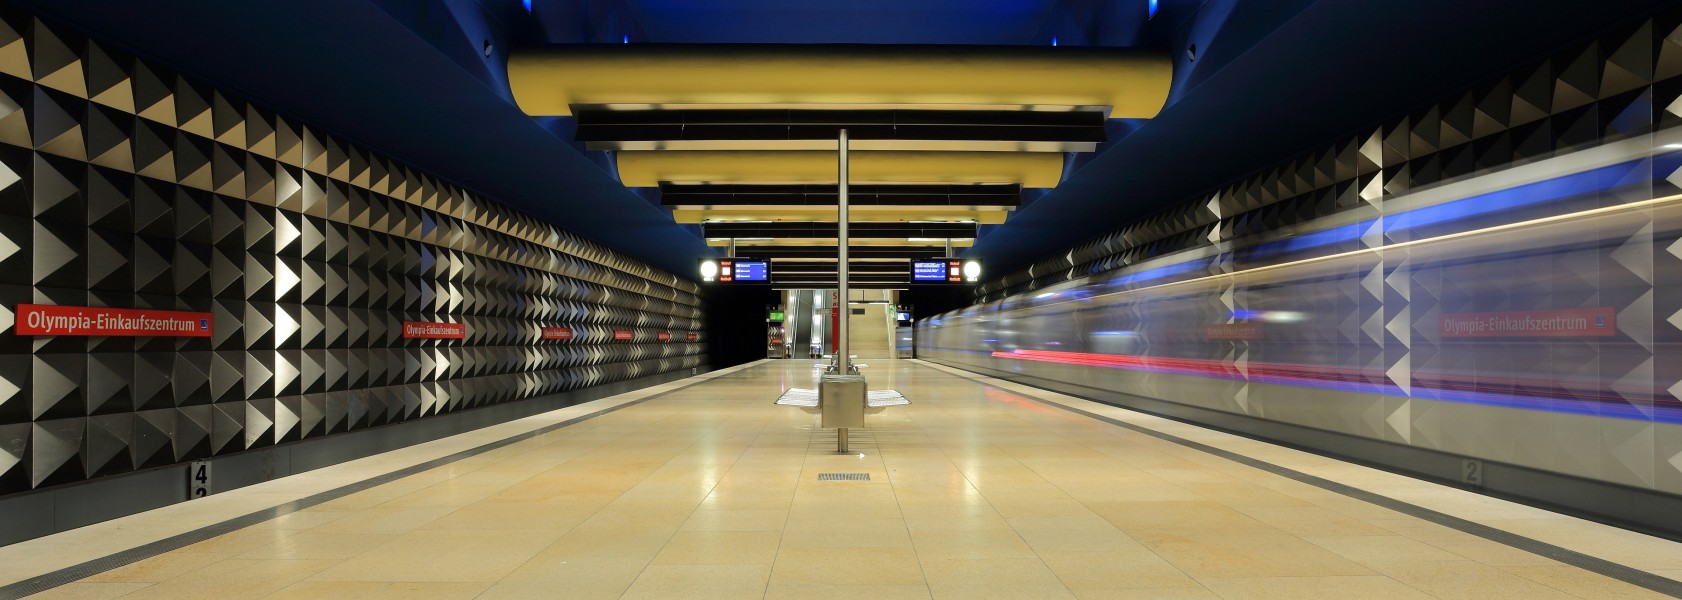 Munich subway station Olympia-Einkaufszentrum